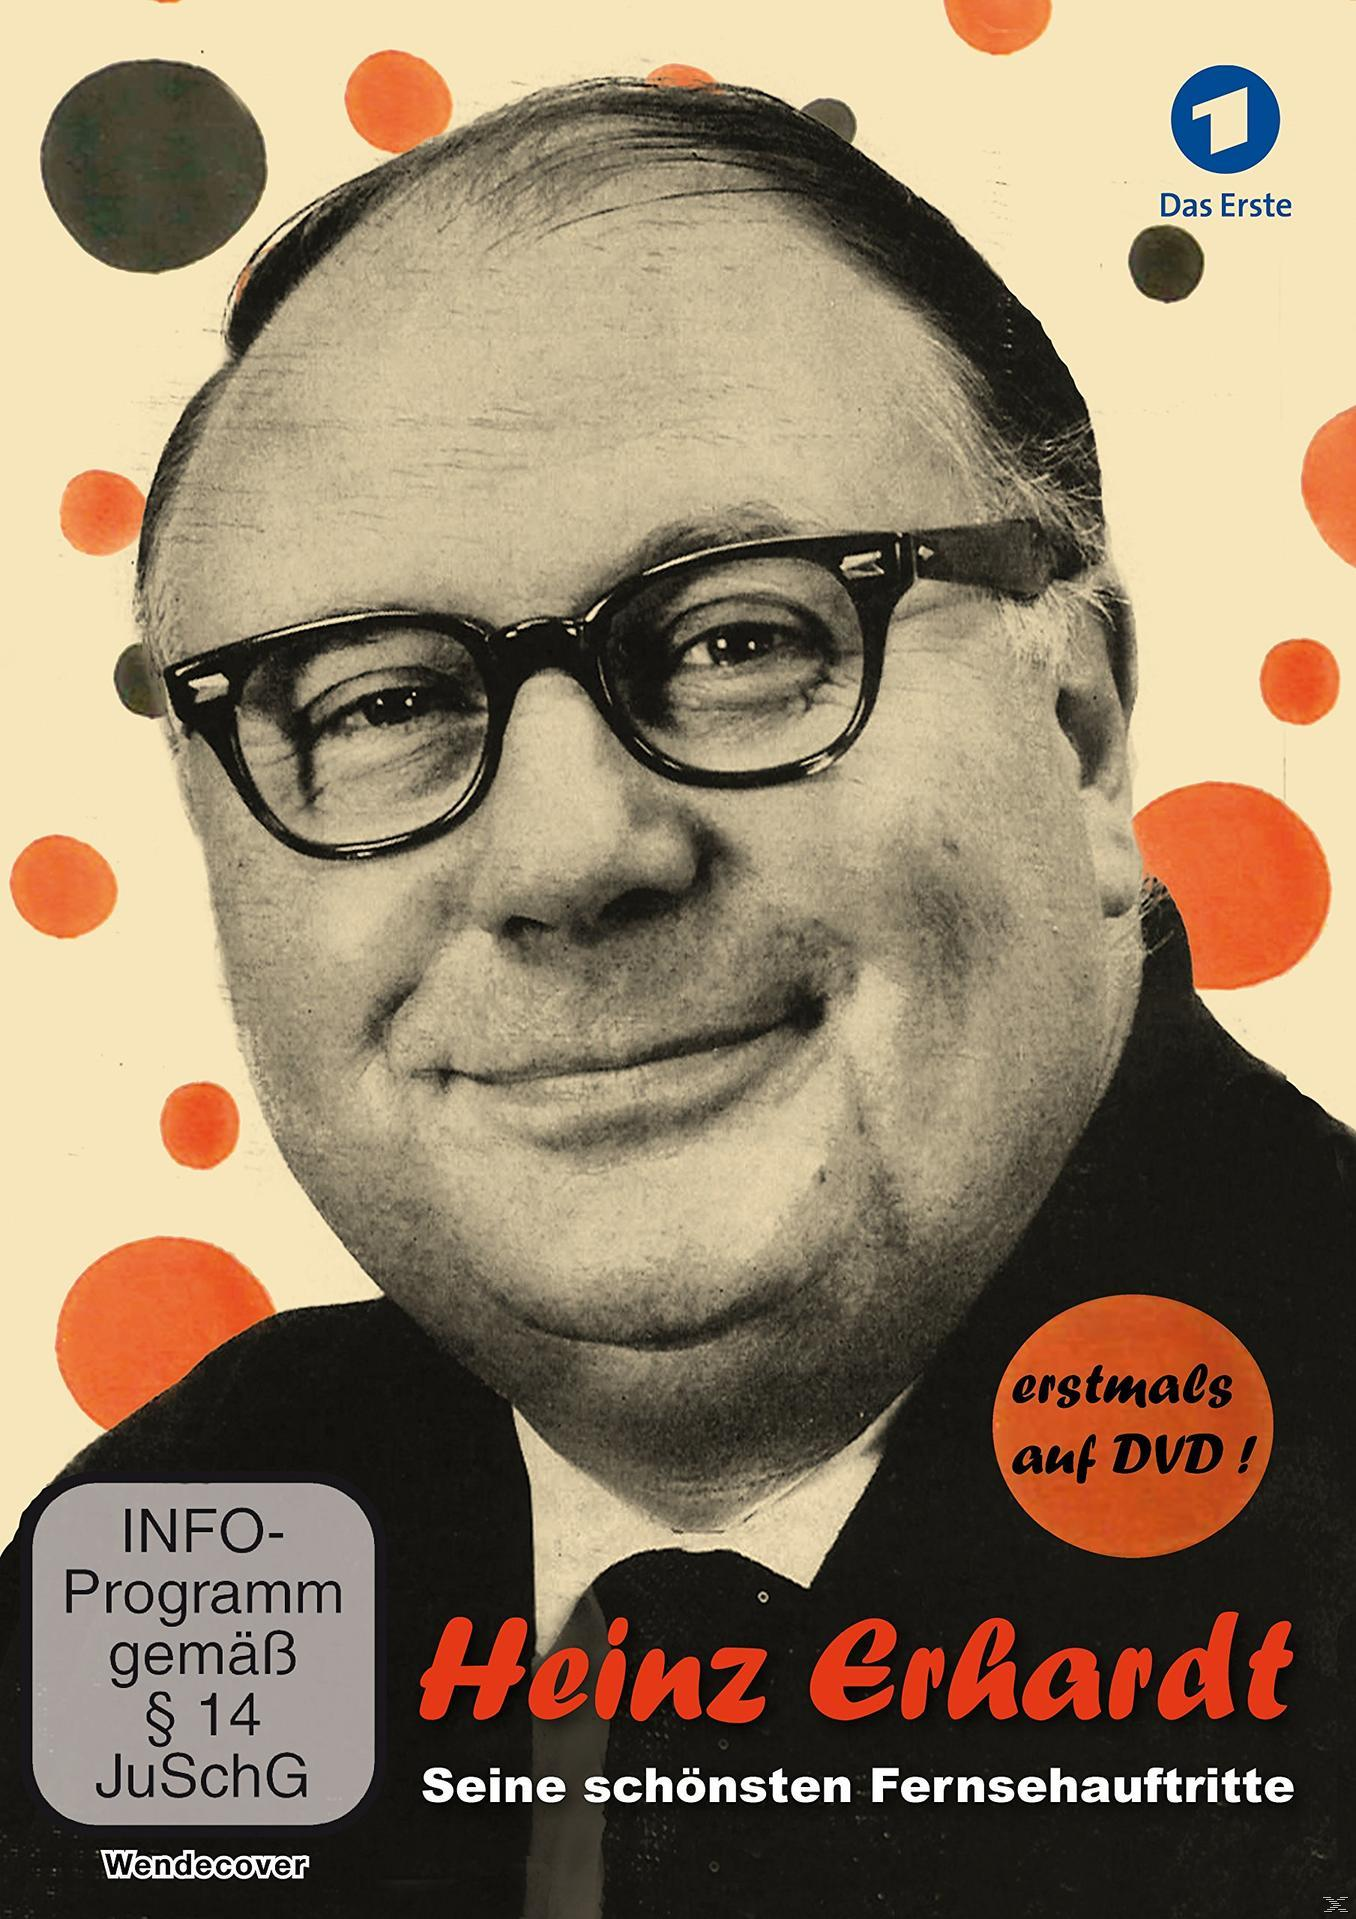 Heinz Erhardt - Fernsehauftritte schönsten (1959-1971) Seine DVD